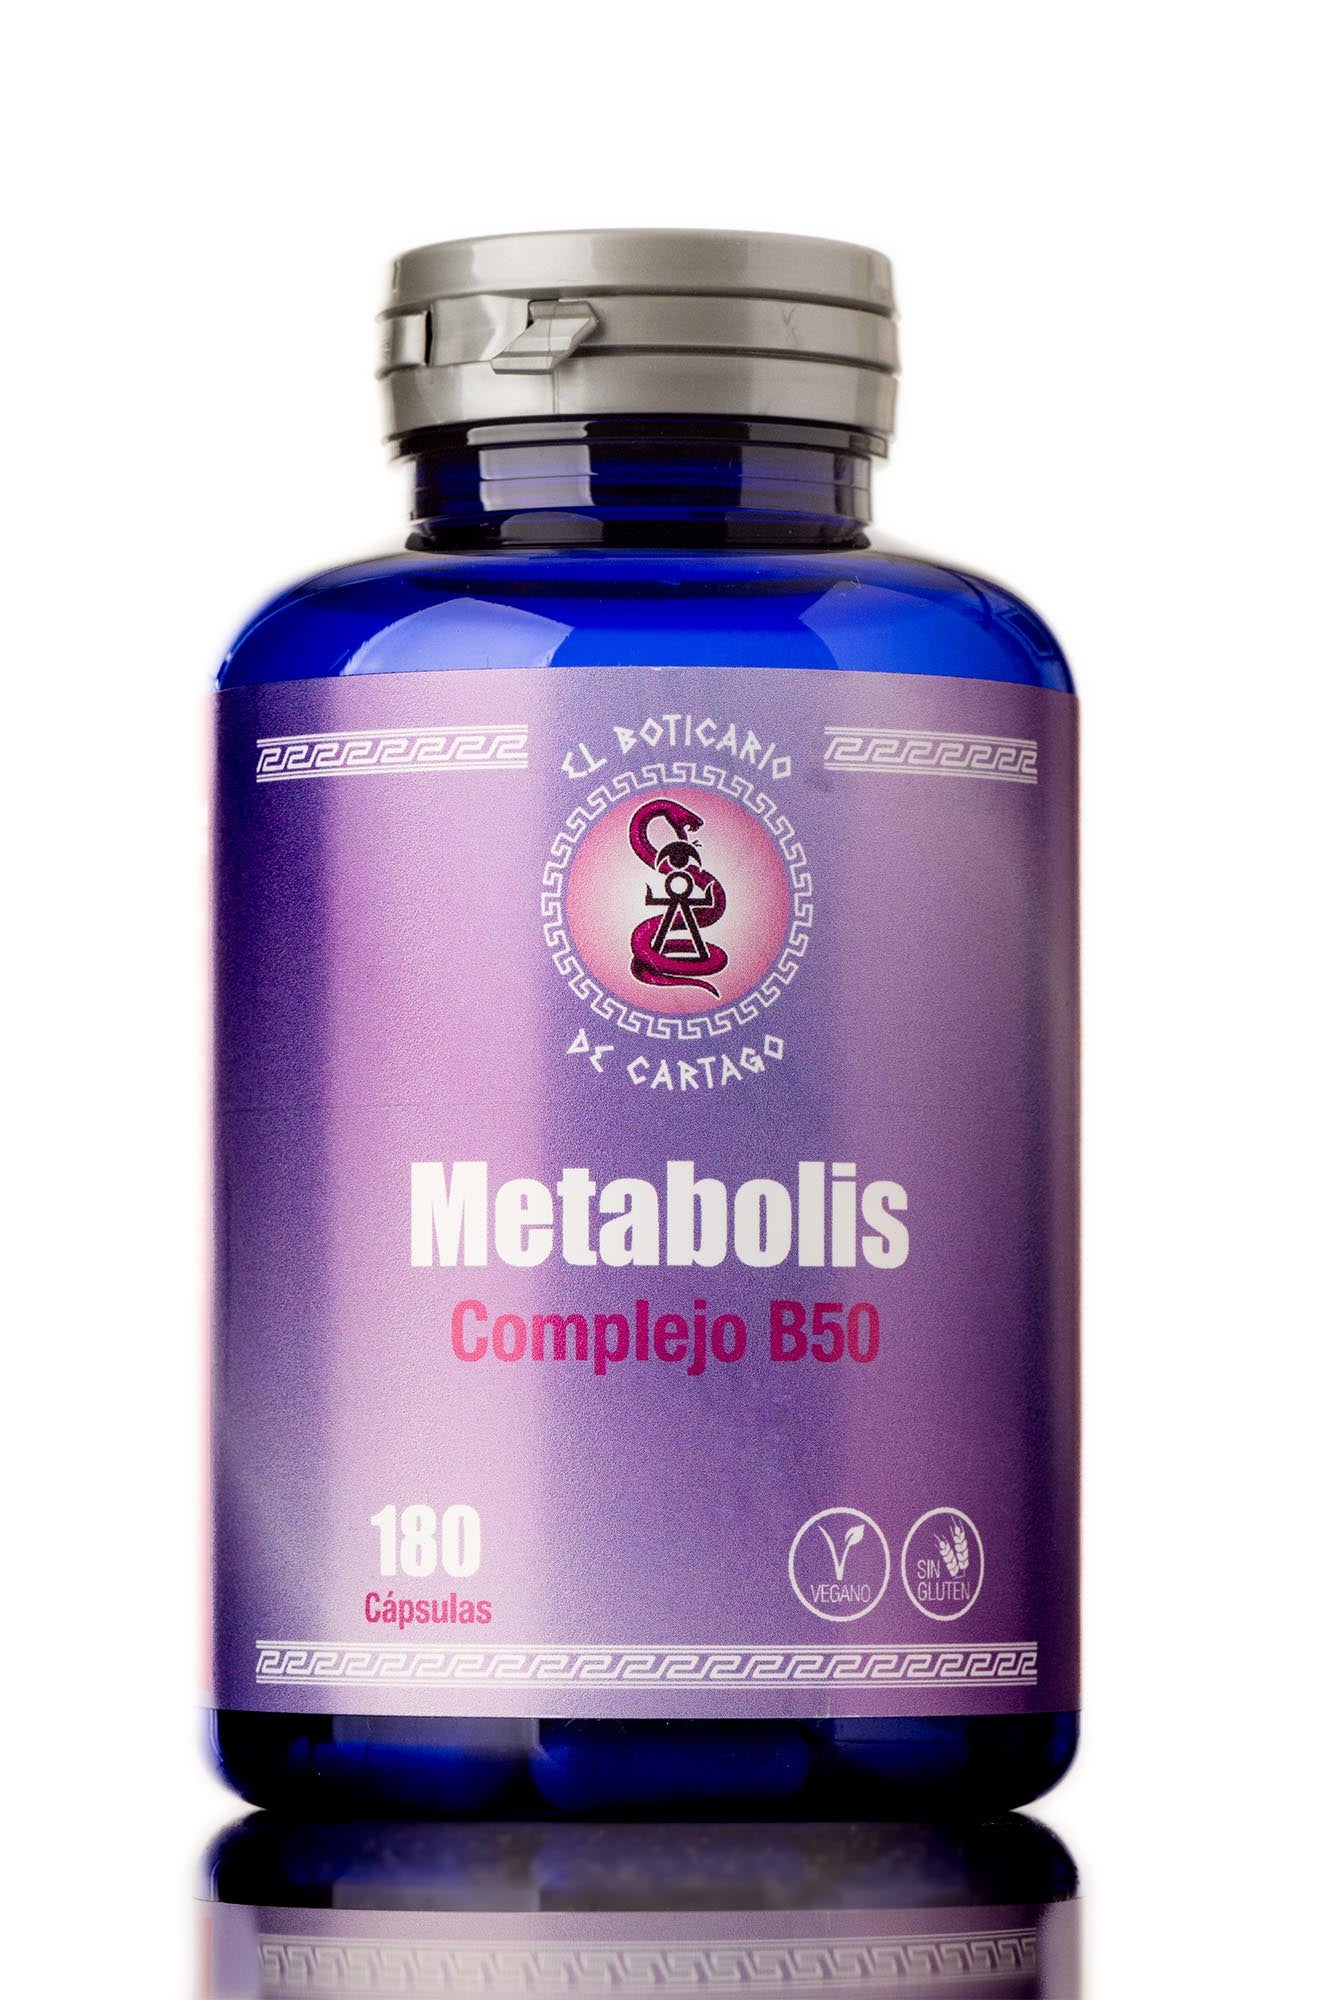 Metabolis - Complejo B50 | Despierta al gigante que llevas dentro